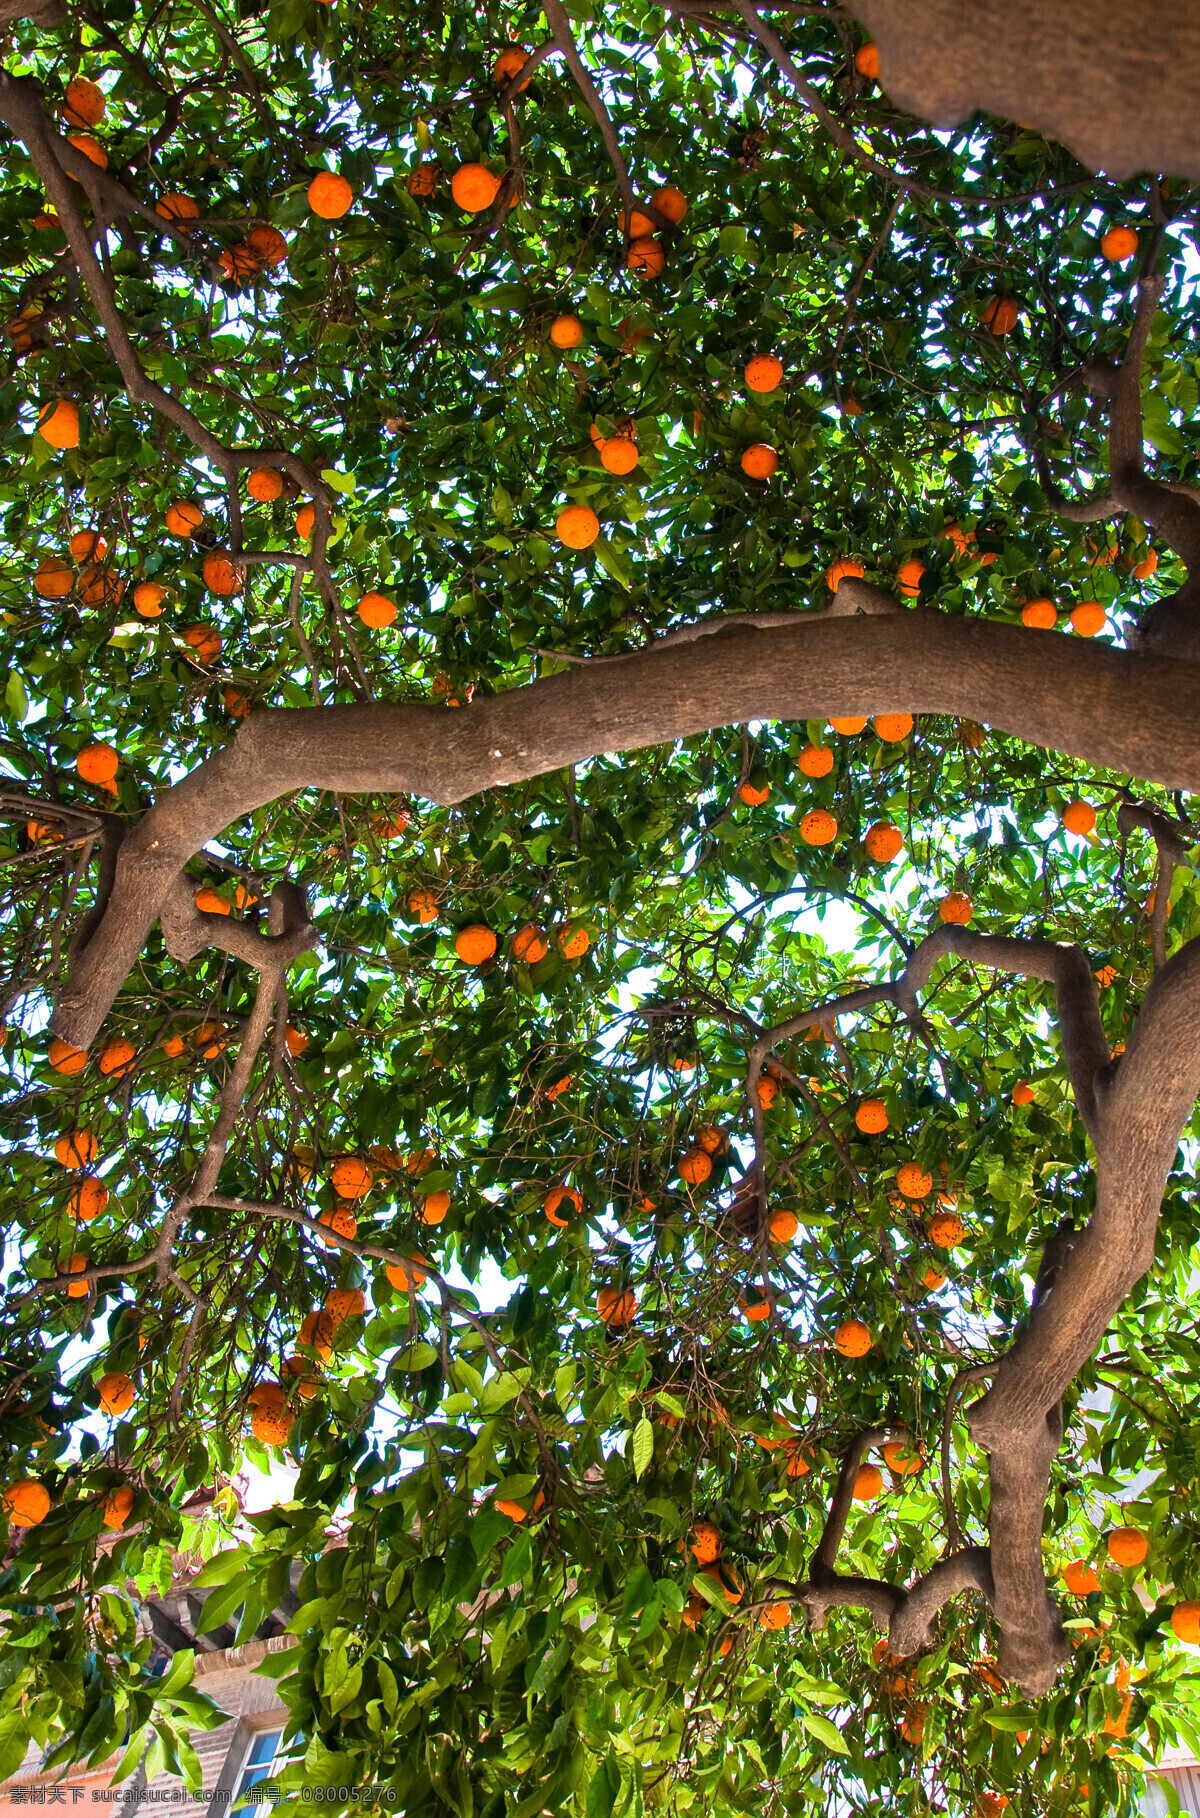 果树摄影 果树 橙子 桔子 水果 新鲜水果 水果插图 水果摄影 水果蔬菜 餐饮美食 黑色